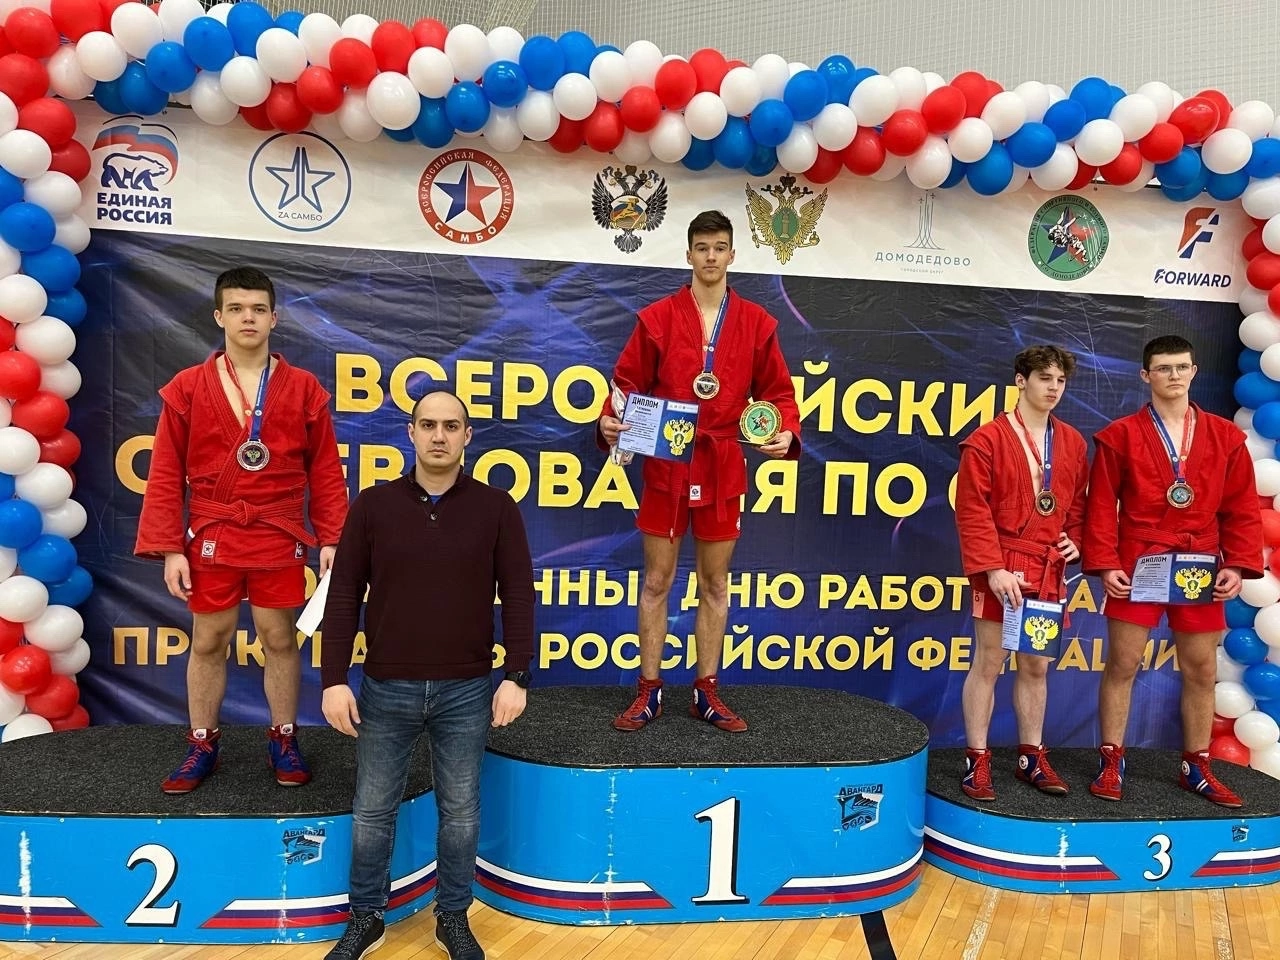 Юный туляк получил право участвовать в первенстве России по самбо в Кемерово.